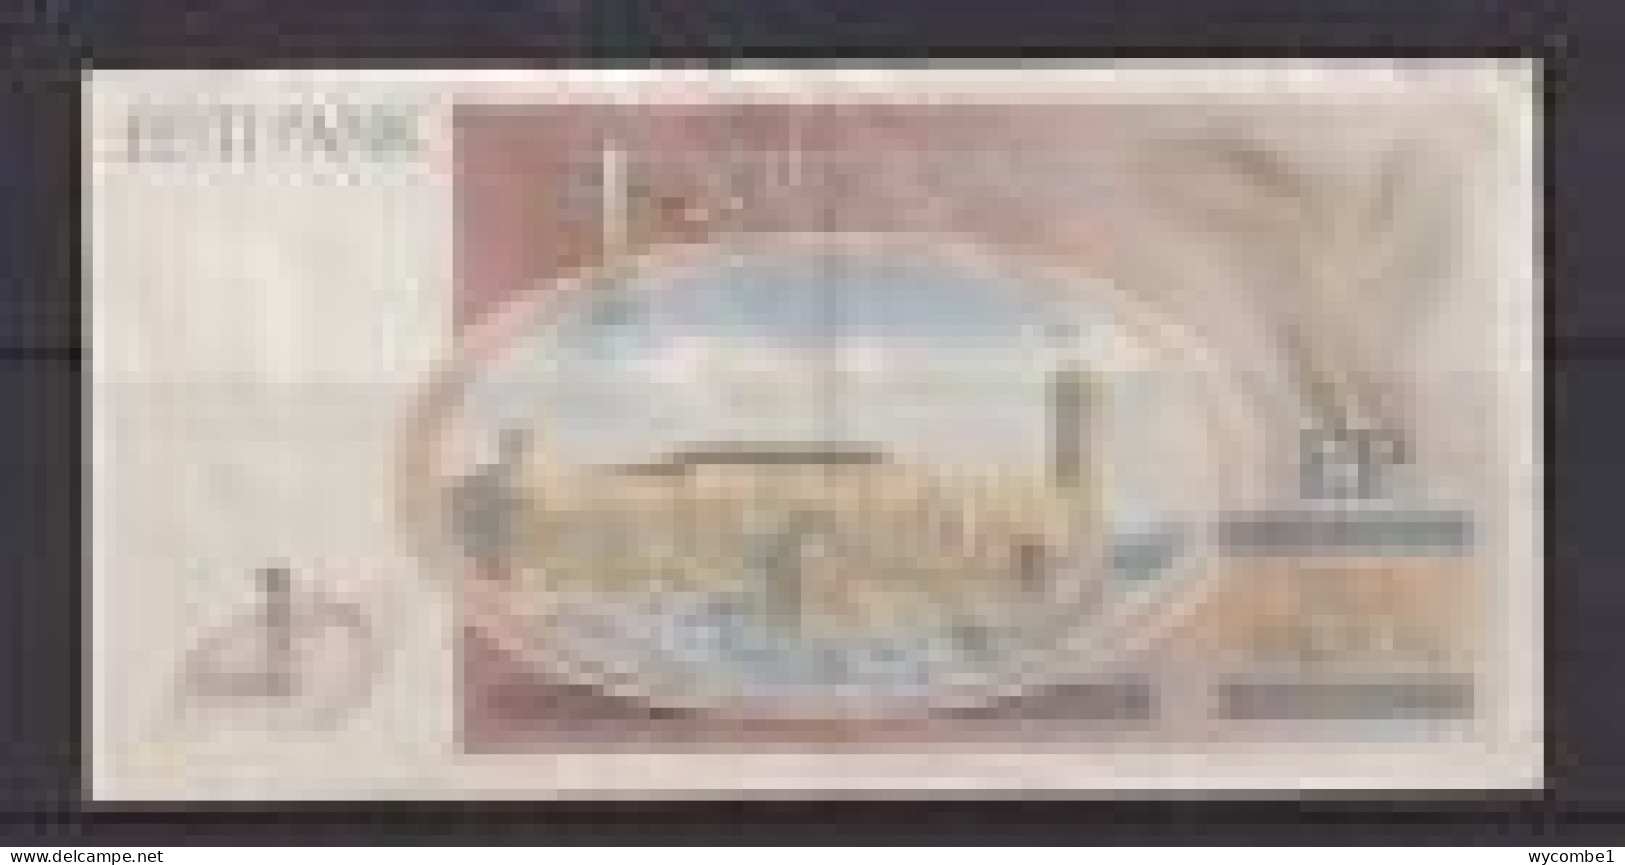 ESTONIA - 1992 1 Kroon Circulated Banknote - Estonia